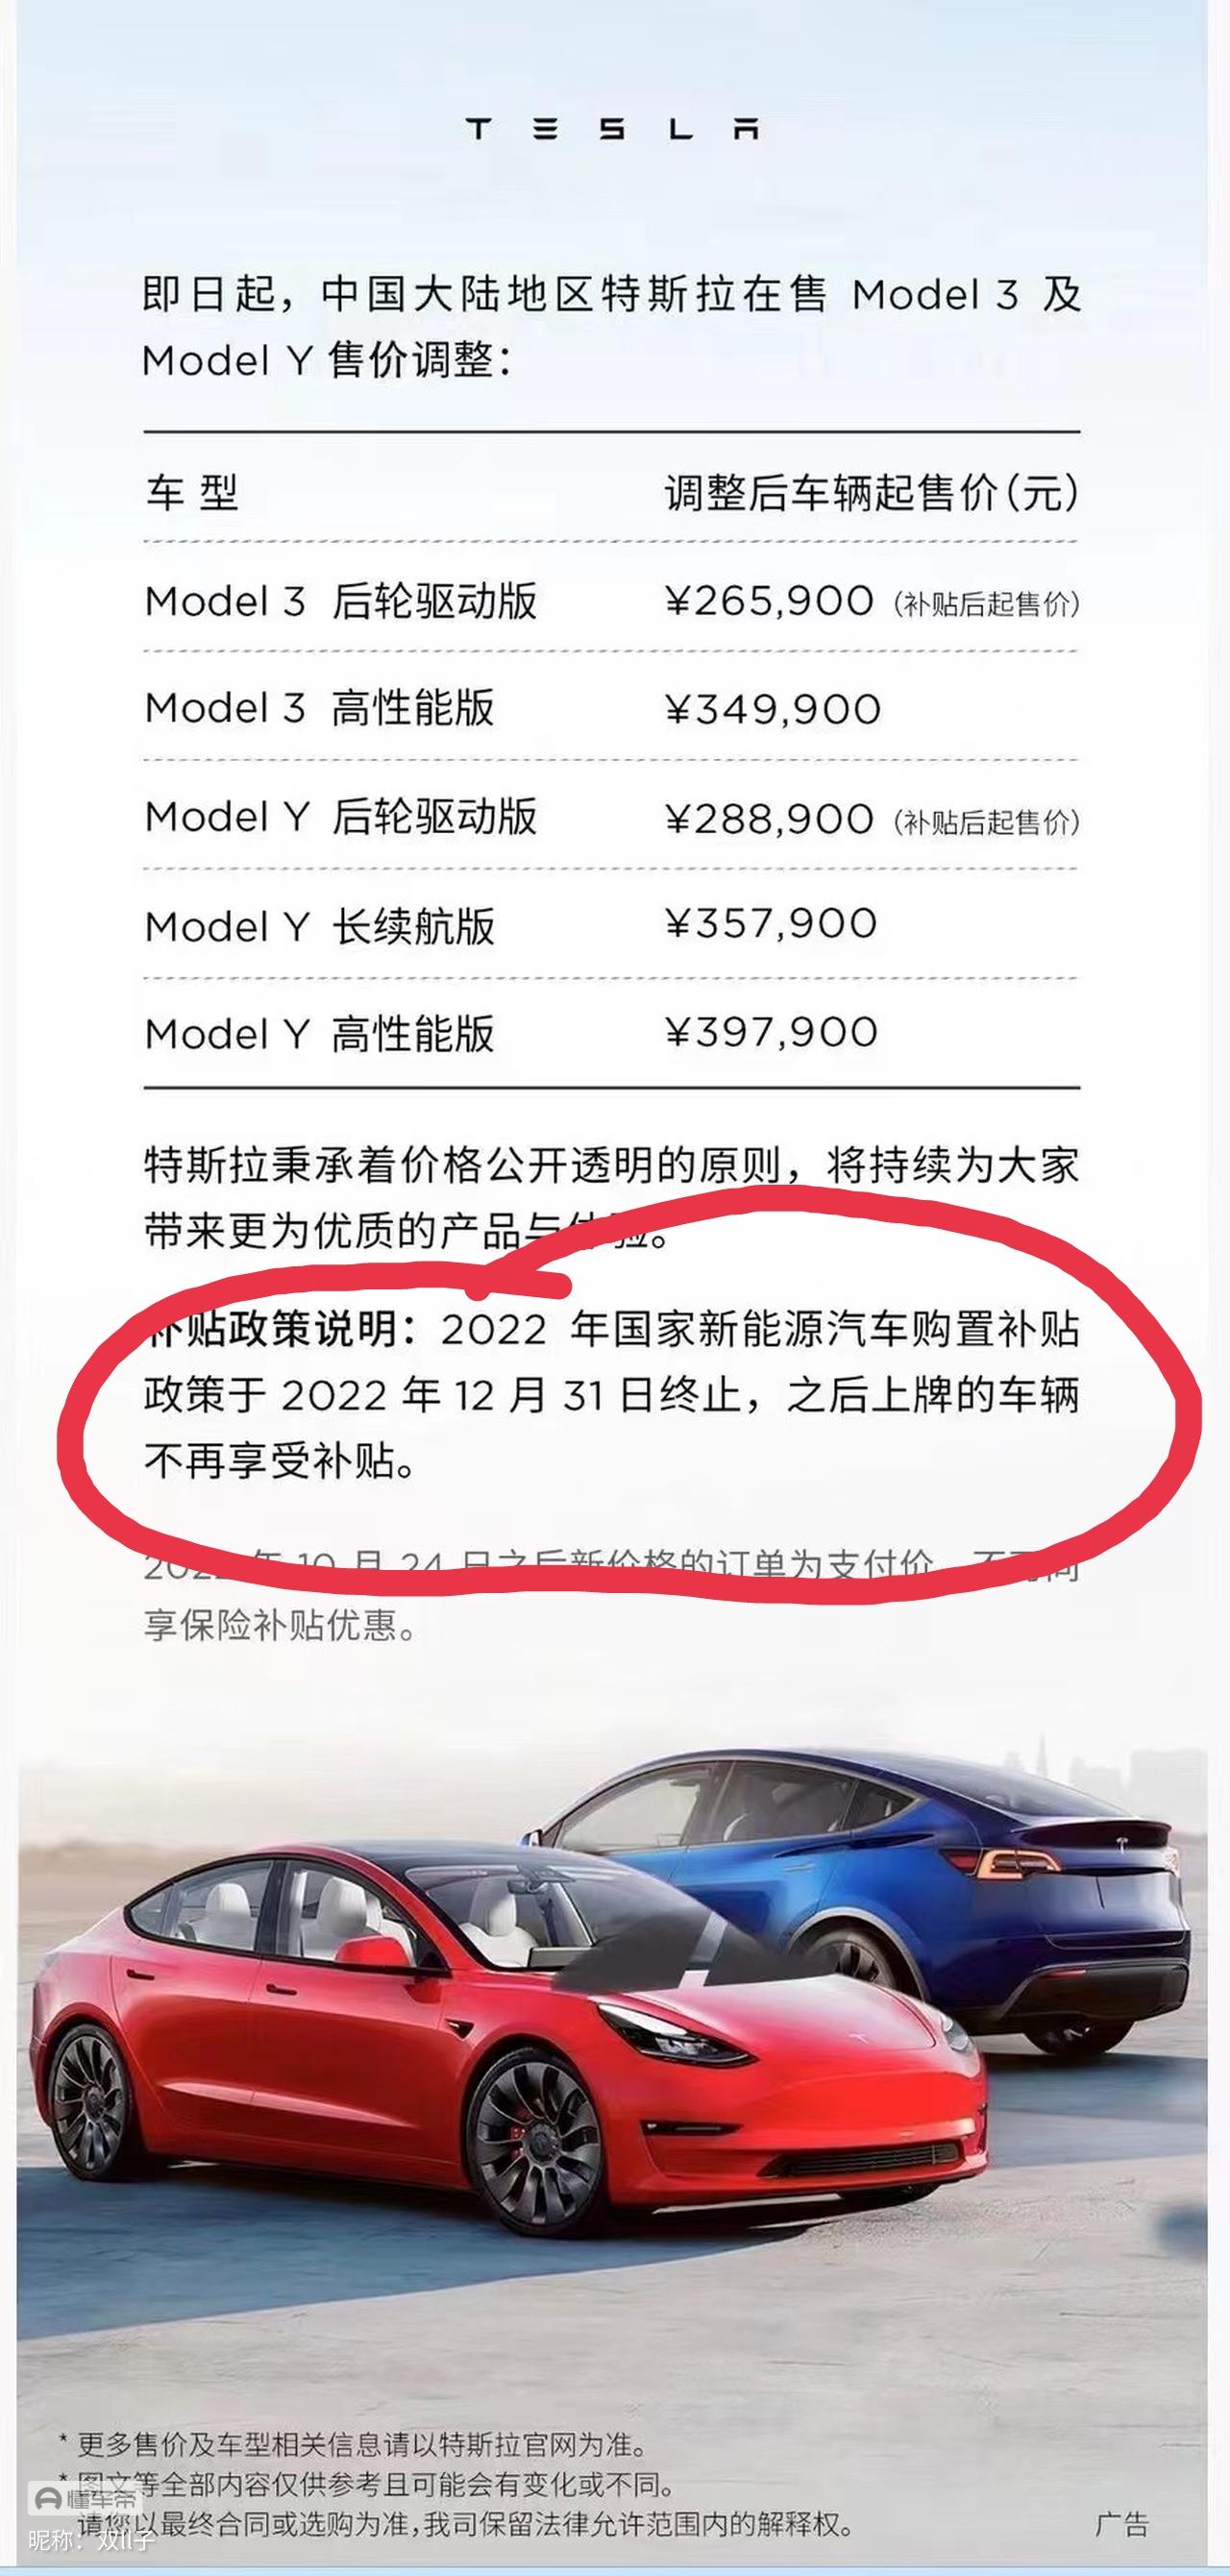 特斯拉Model Y 这个价格只能今年提车，这就很尴尬了(因为马上过2022，上牌日期影响以后卖车价格）特斯拉还是精明啊